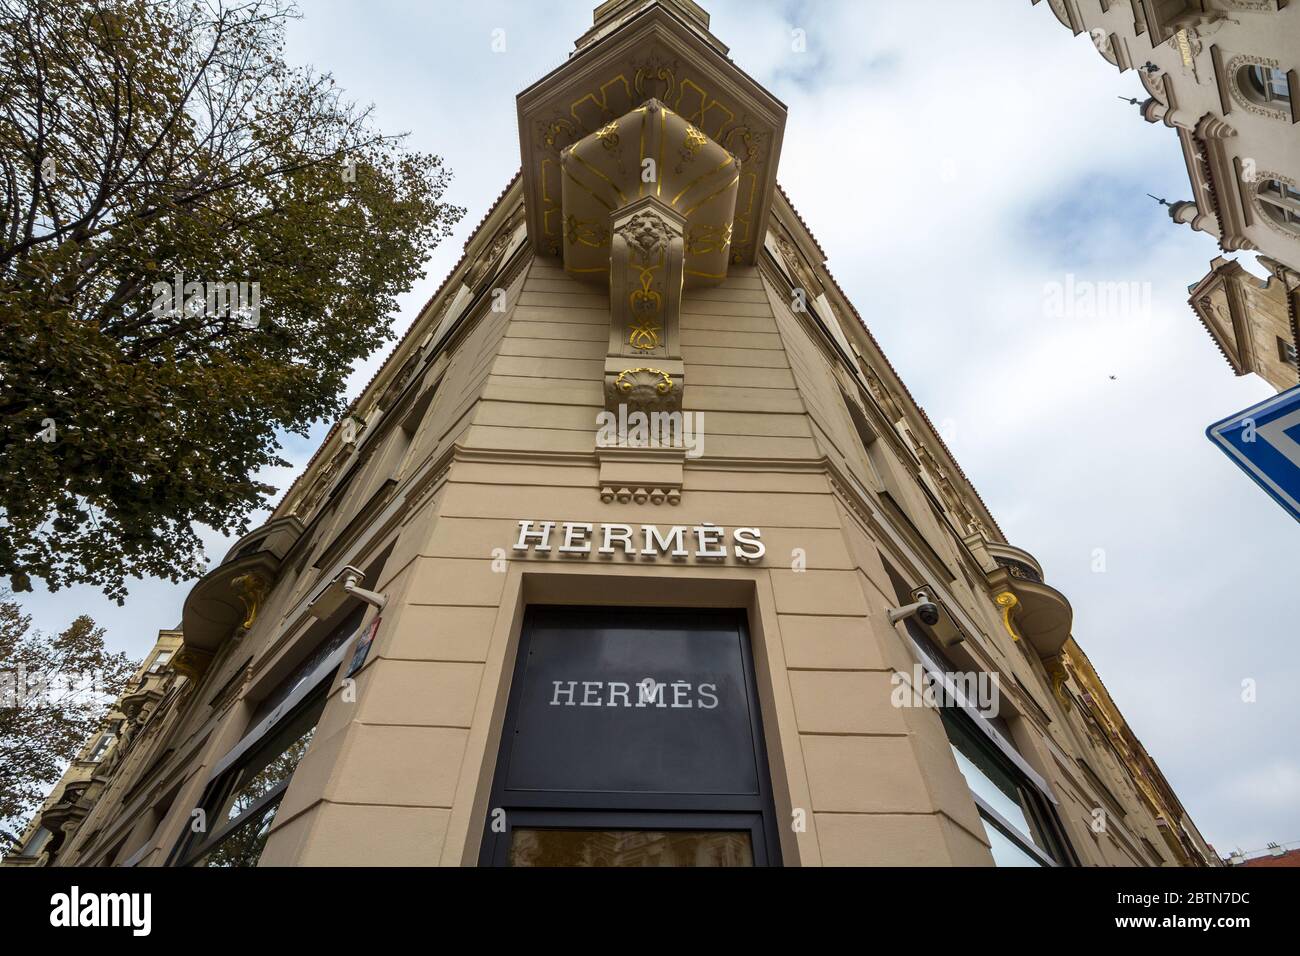 PRAG - TSCHECHIEN - 1. NOVEMBER 2019: Logo von Hermes auf der Prager Hauptboutique. Hermes ist ein französisches Luxusgüterunternehmen, das sich auf perfum spezialisiert hat Stockfoto